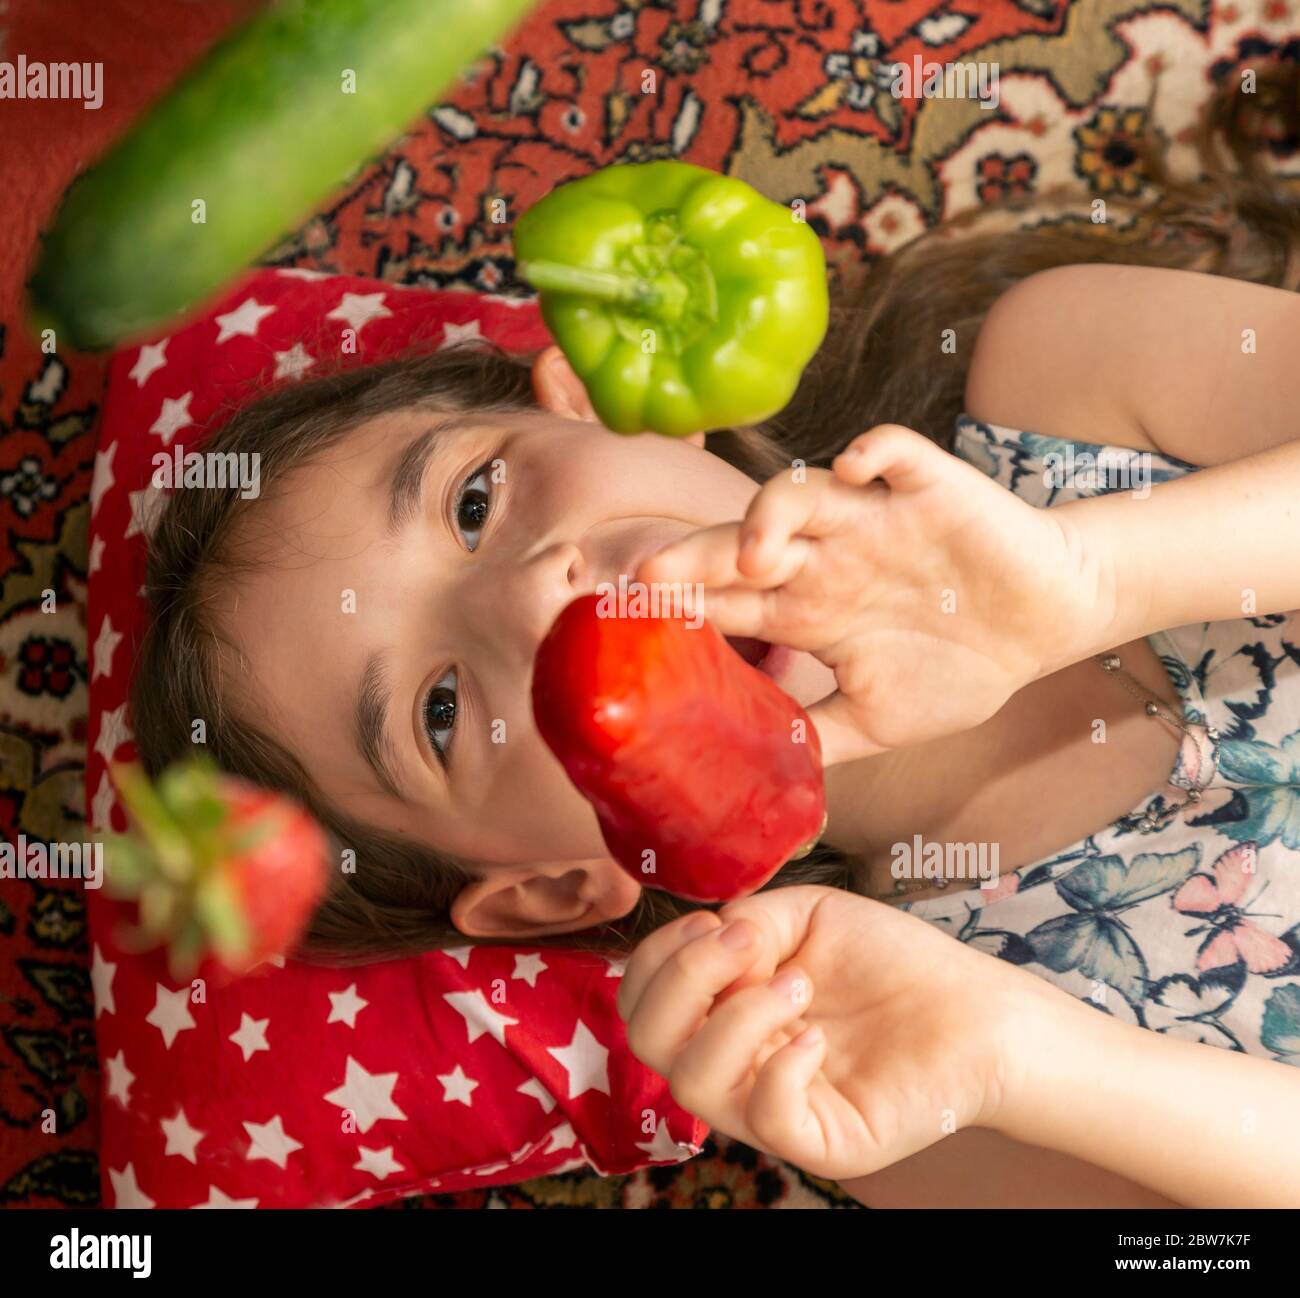 Das Kind spielt mit Fliegengemüse. Ein kleines Mädchen spielt mit rotem Pfeffer, Gurke, Erdbeere, Kiwi grünen Pfeffer und Zitrone in ihrem Haus Stockfoto